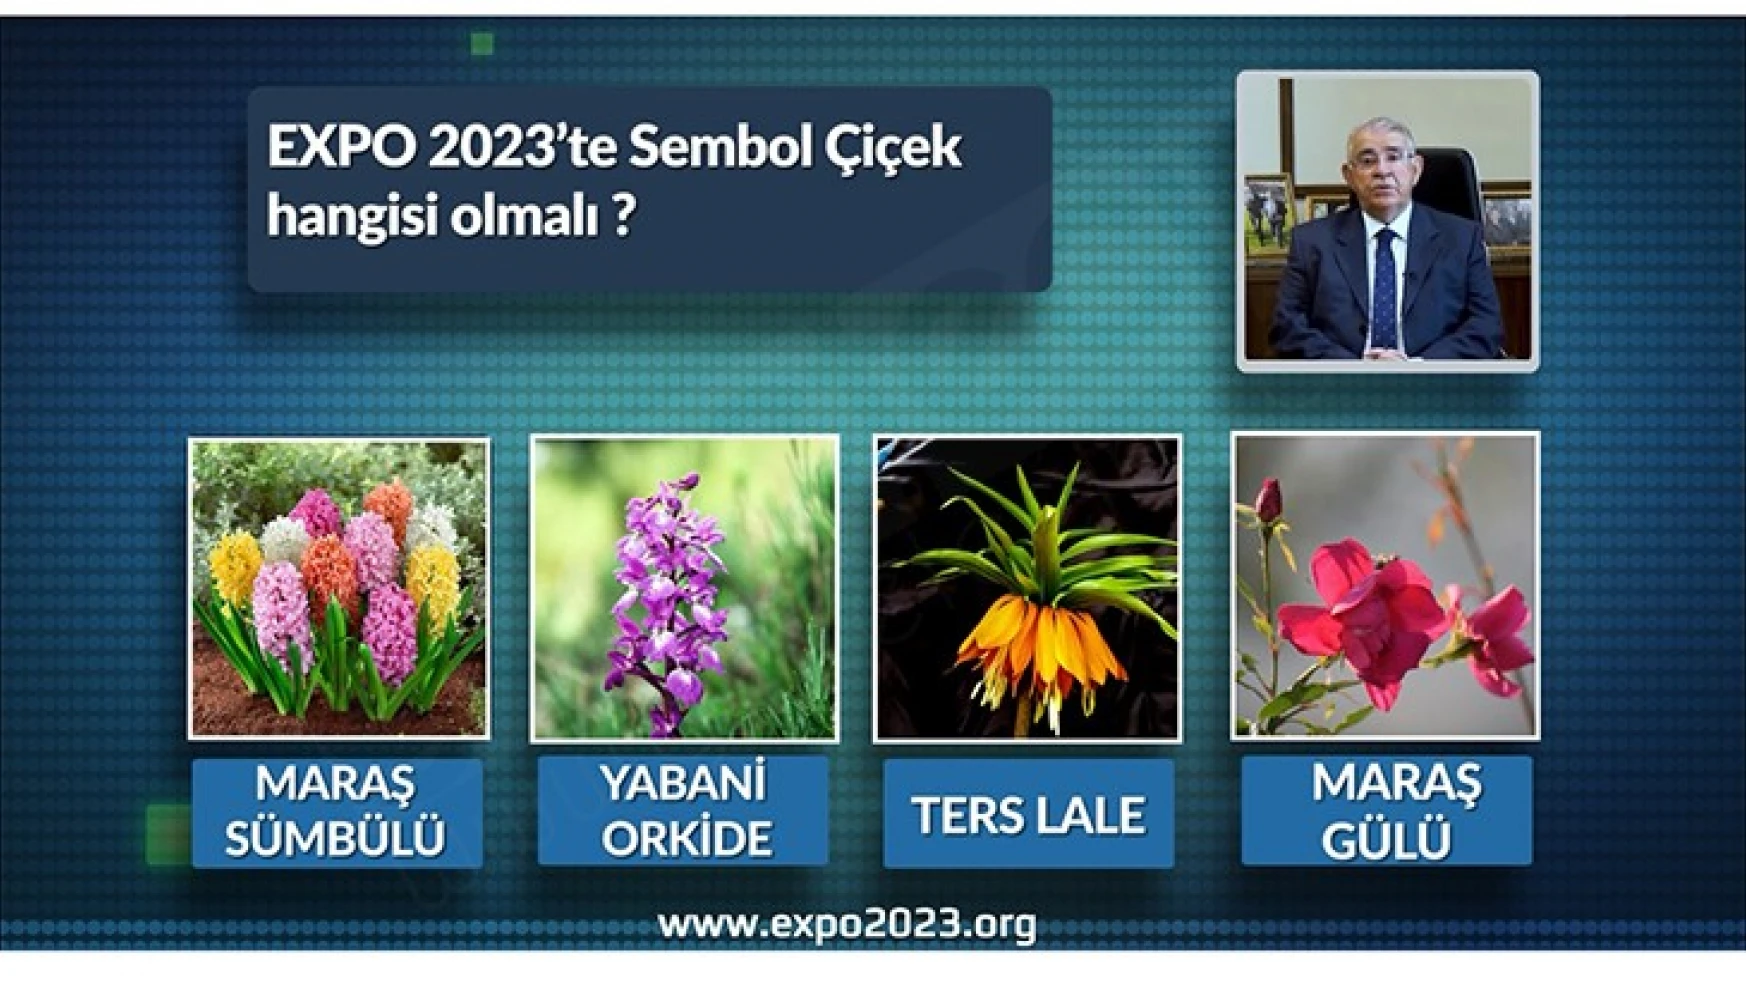 EXPO 2023 sembol çiçeğini vatandaşlar belirleyecek